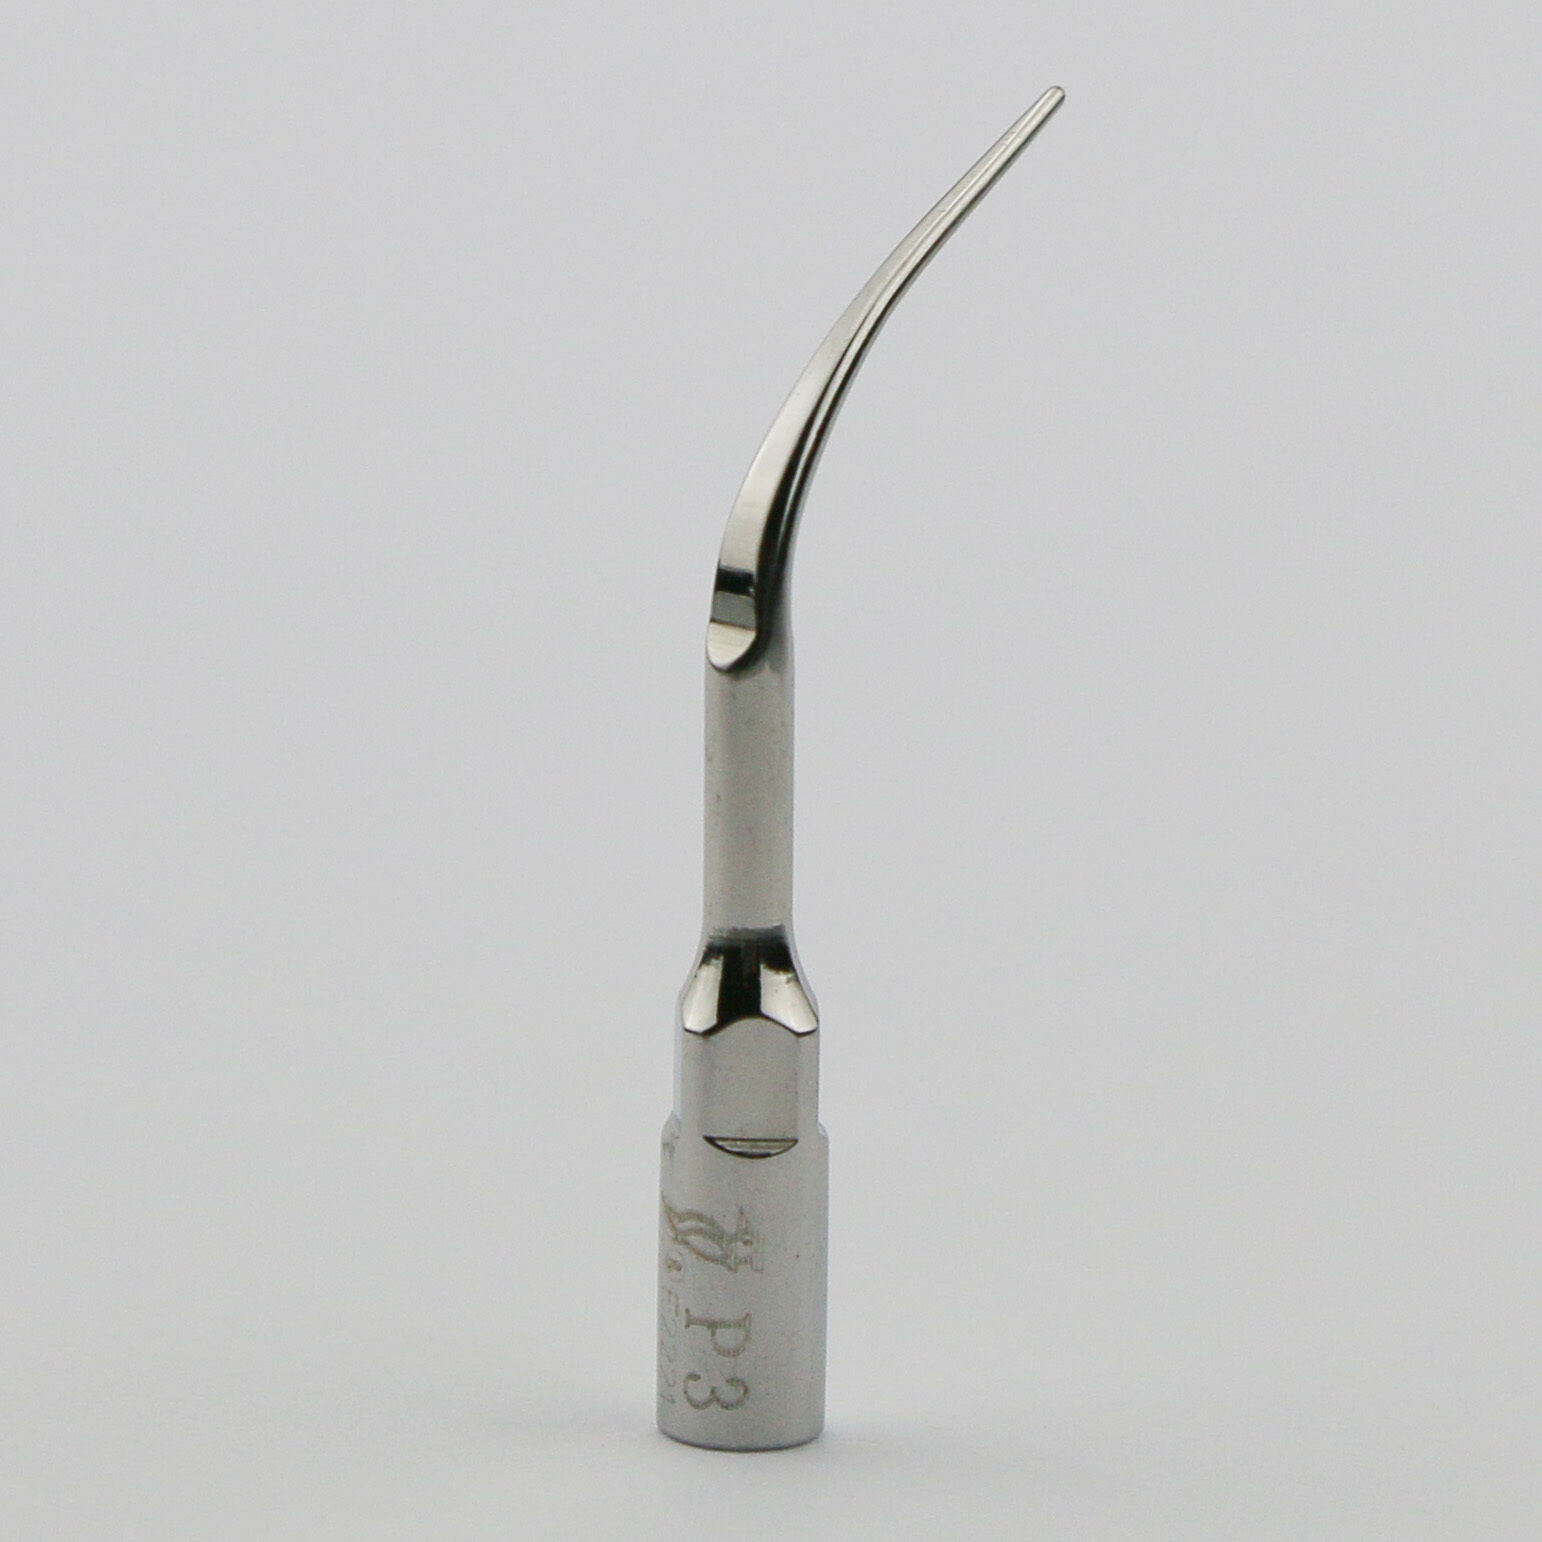 5Pcs Woodpecker P3 Pontas de ultrassom para scaler periodontia compatível comt EMS UDS